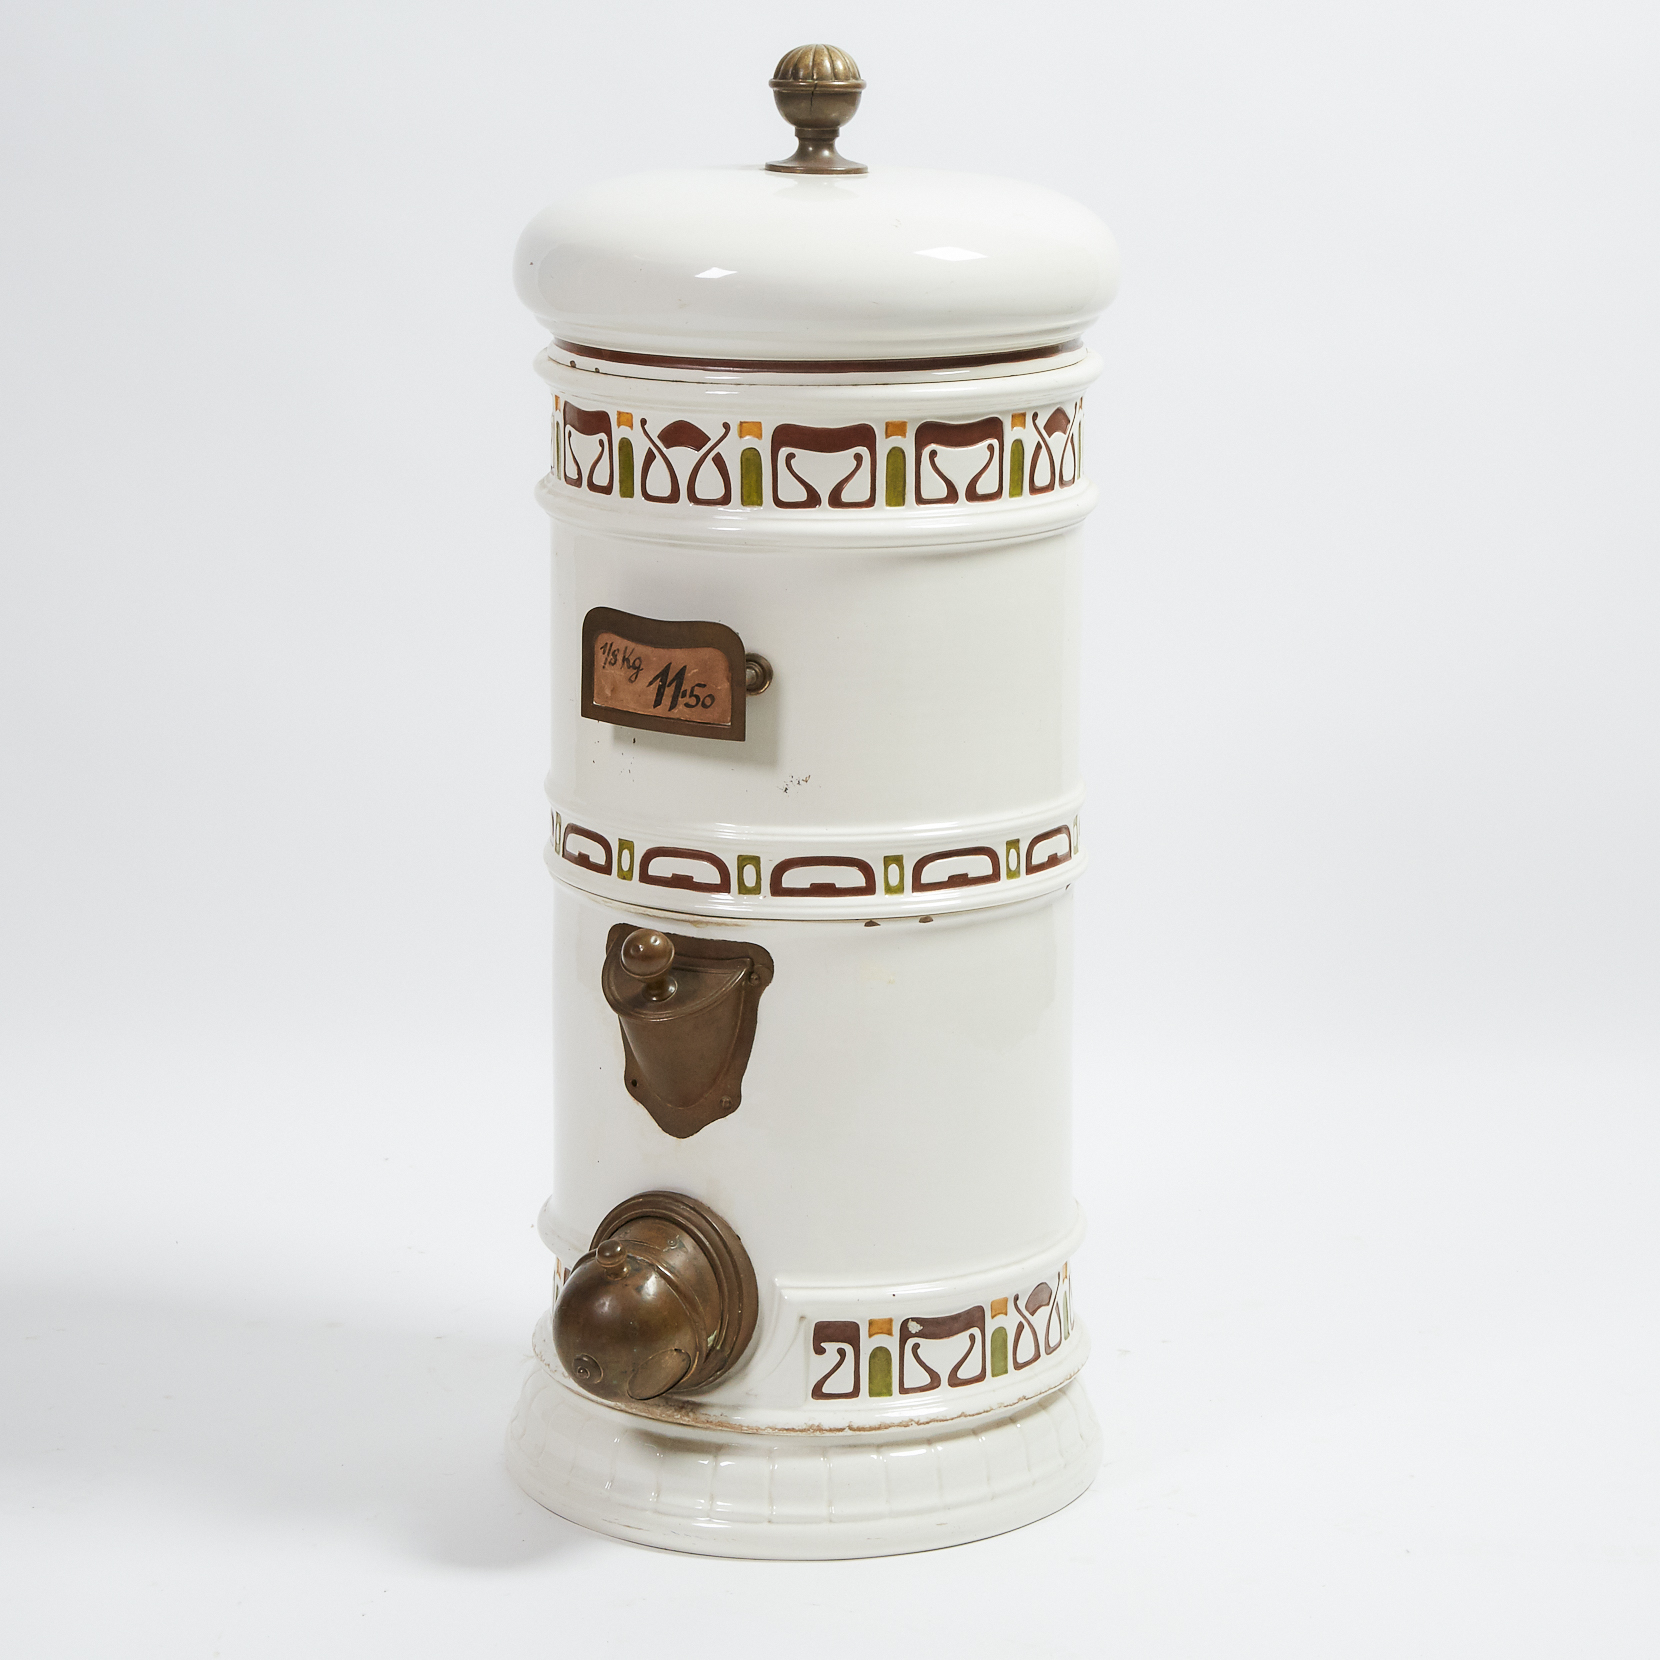 Large German Jungendstil Ceramic and Brass Coffee Bean Hopper, Frigola & Co., Breslau, c.1900